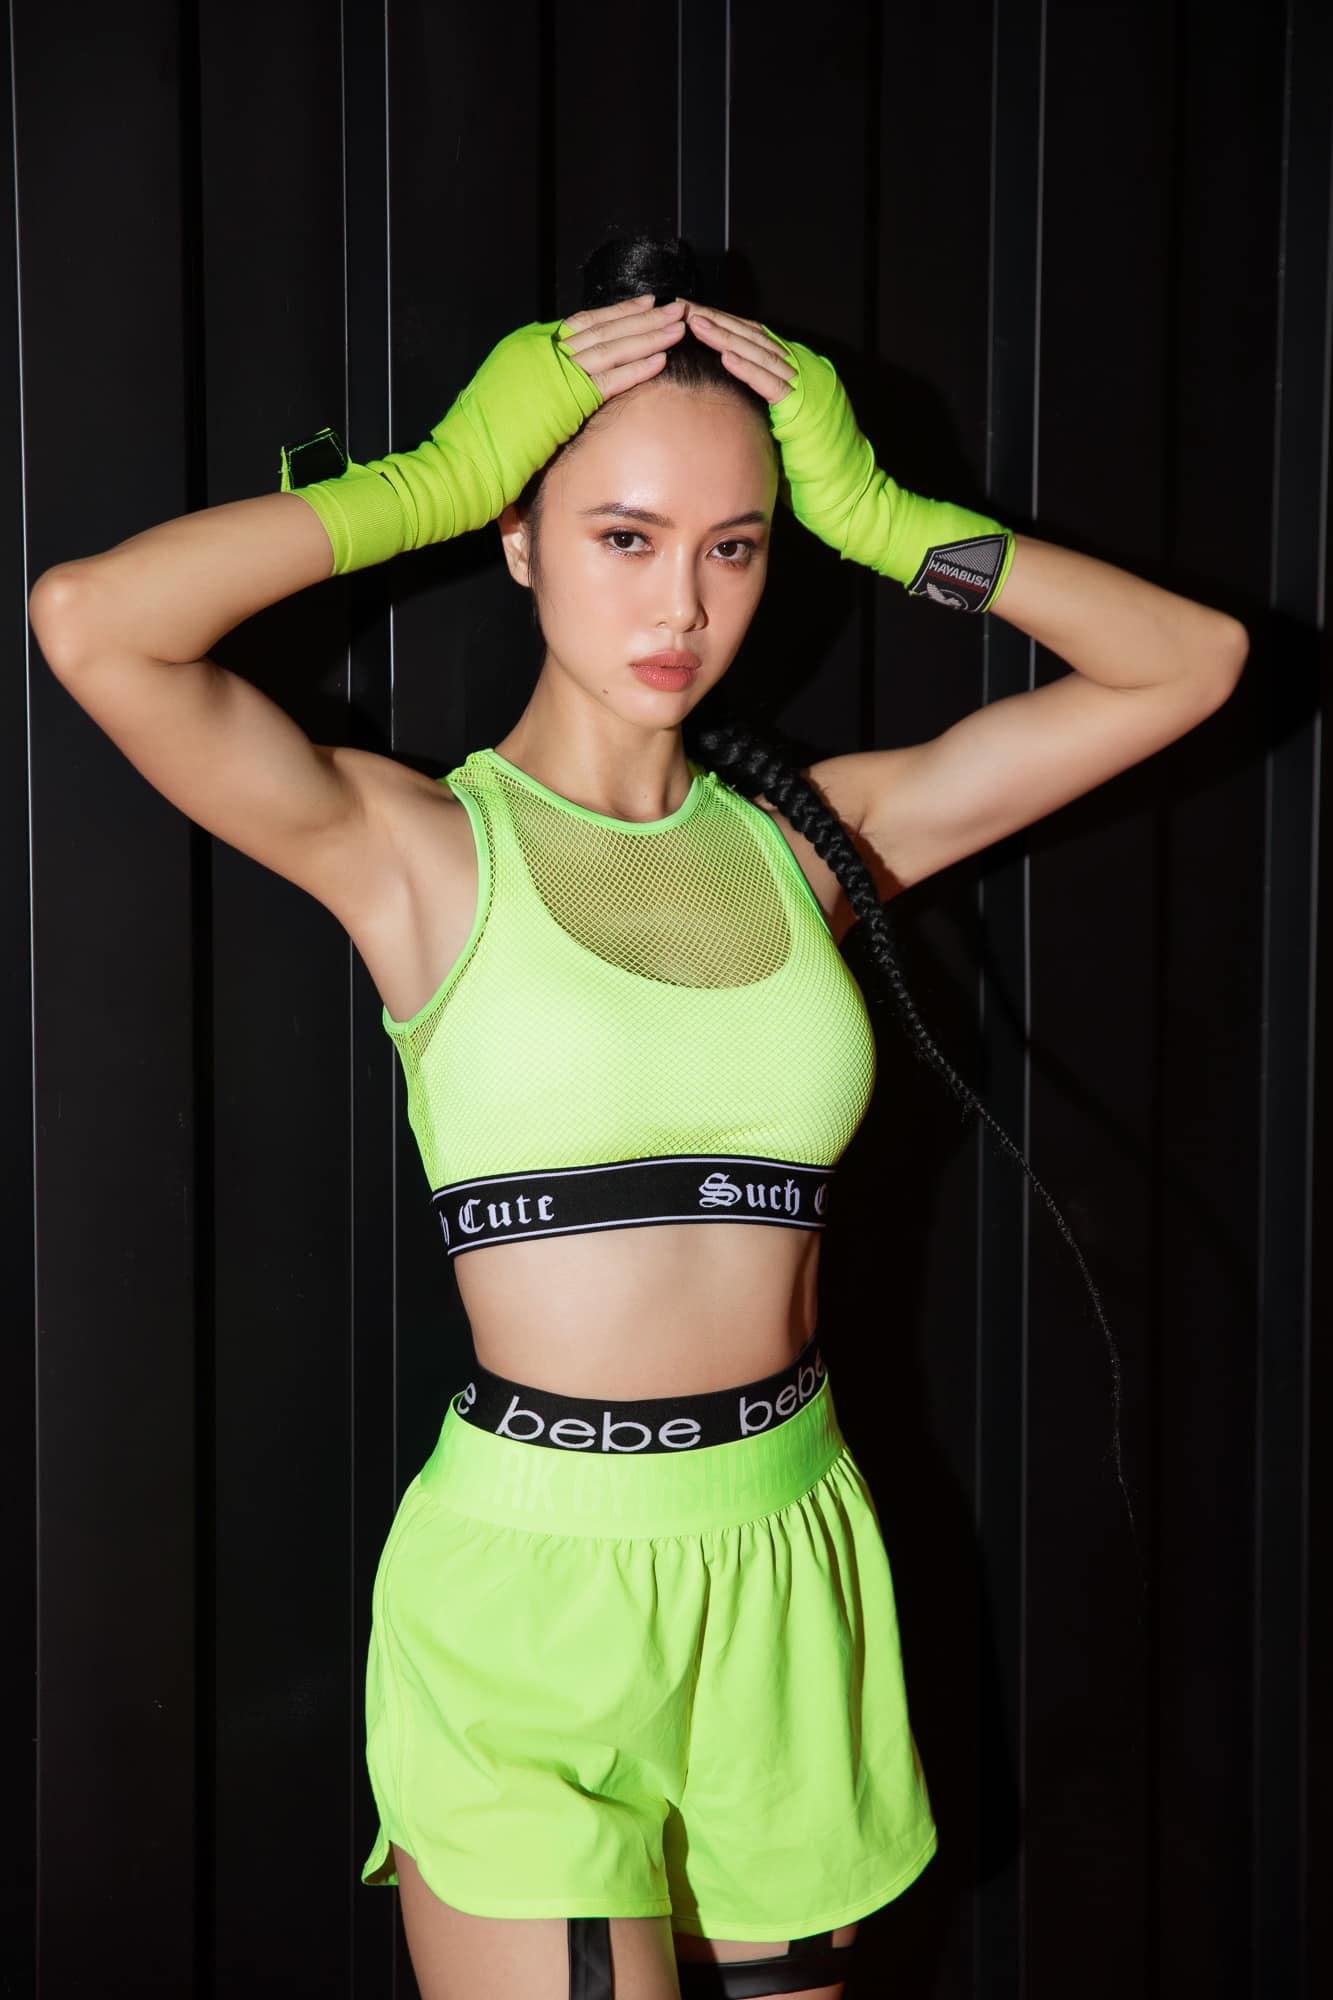 Diễn viên sexy nhất nhì showbiz Việt dáng bốc lửa nhờ luyện boxing - Ảnh 6.